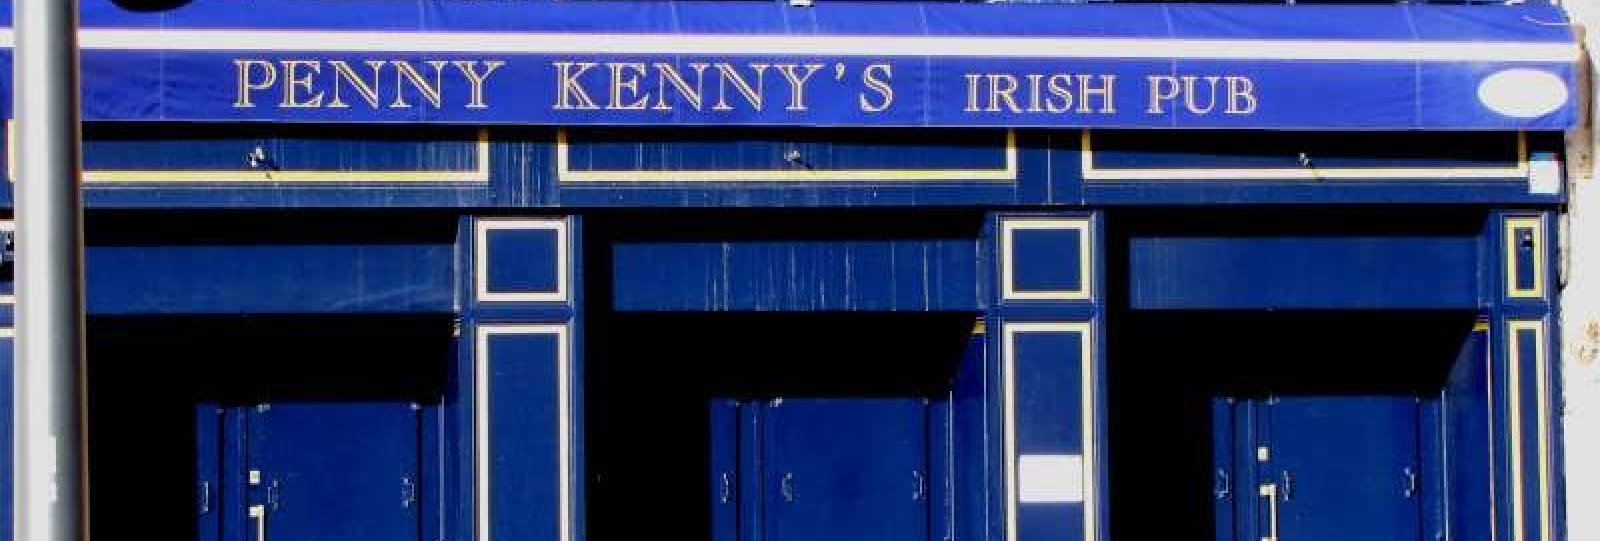 Penny Kenny's Irish Pub